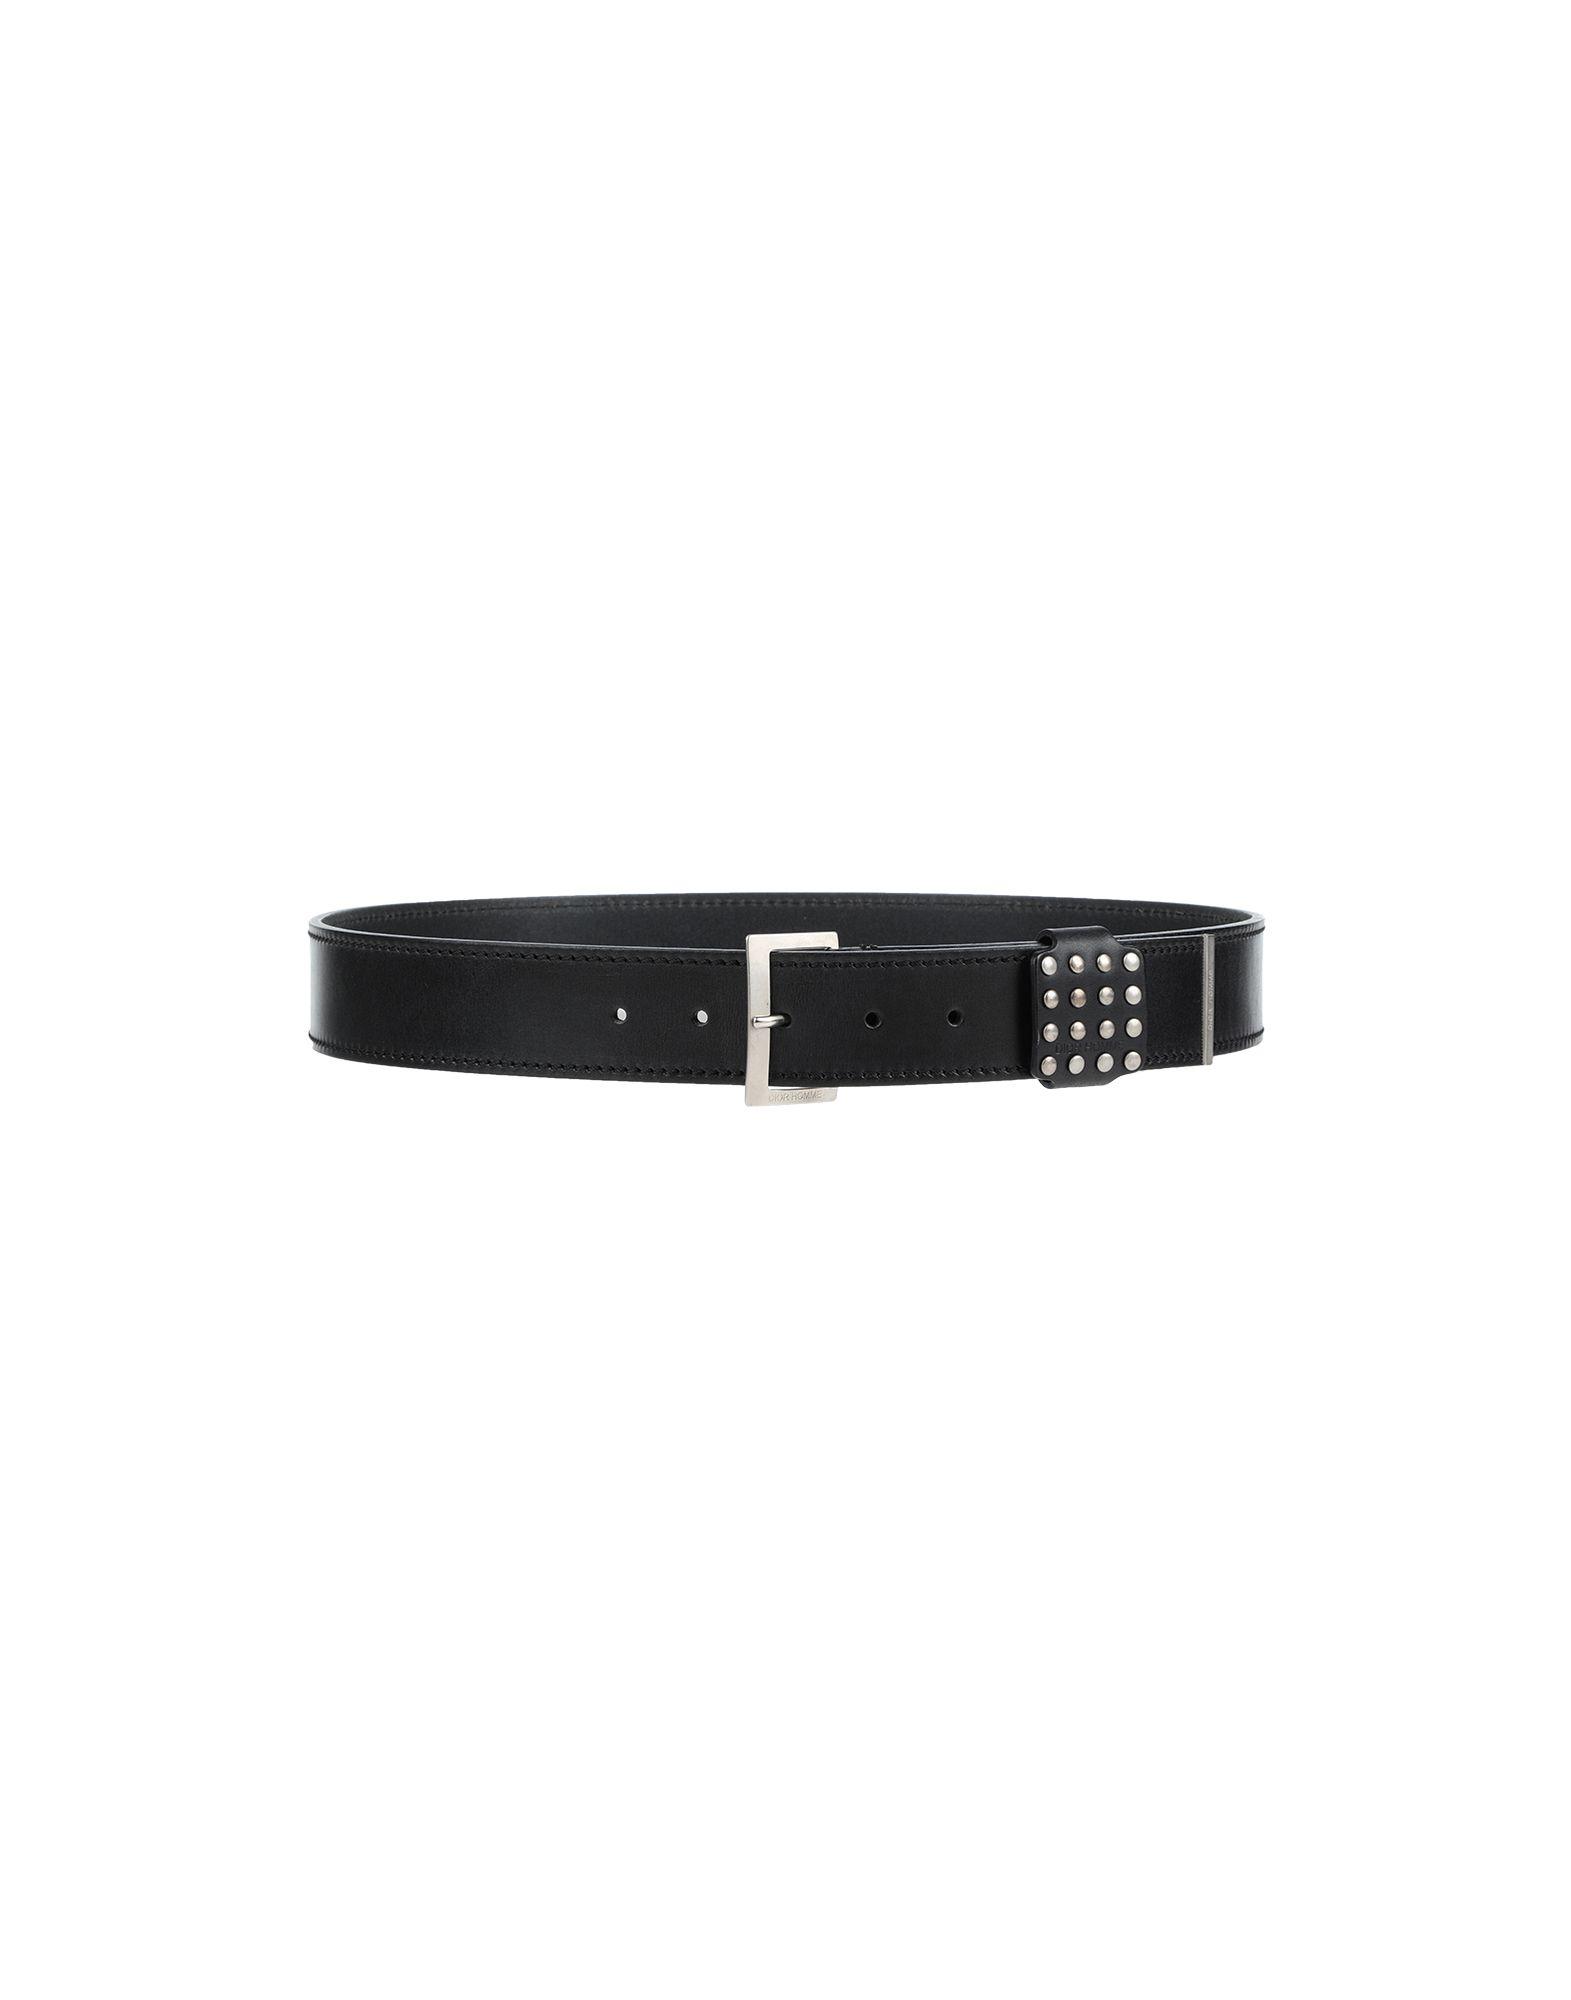 Dior Leather Belt in Black for Men - Lyst